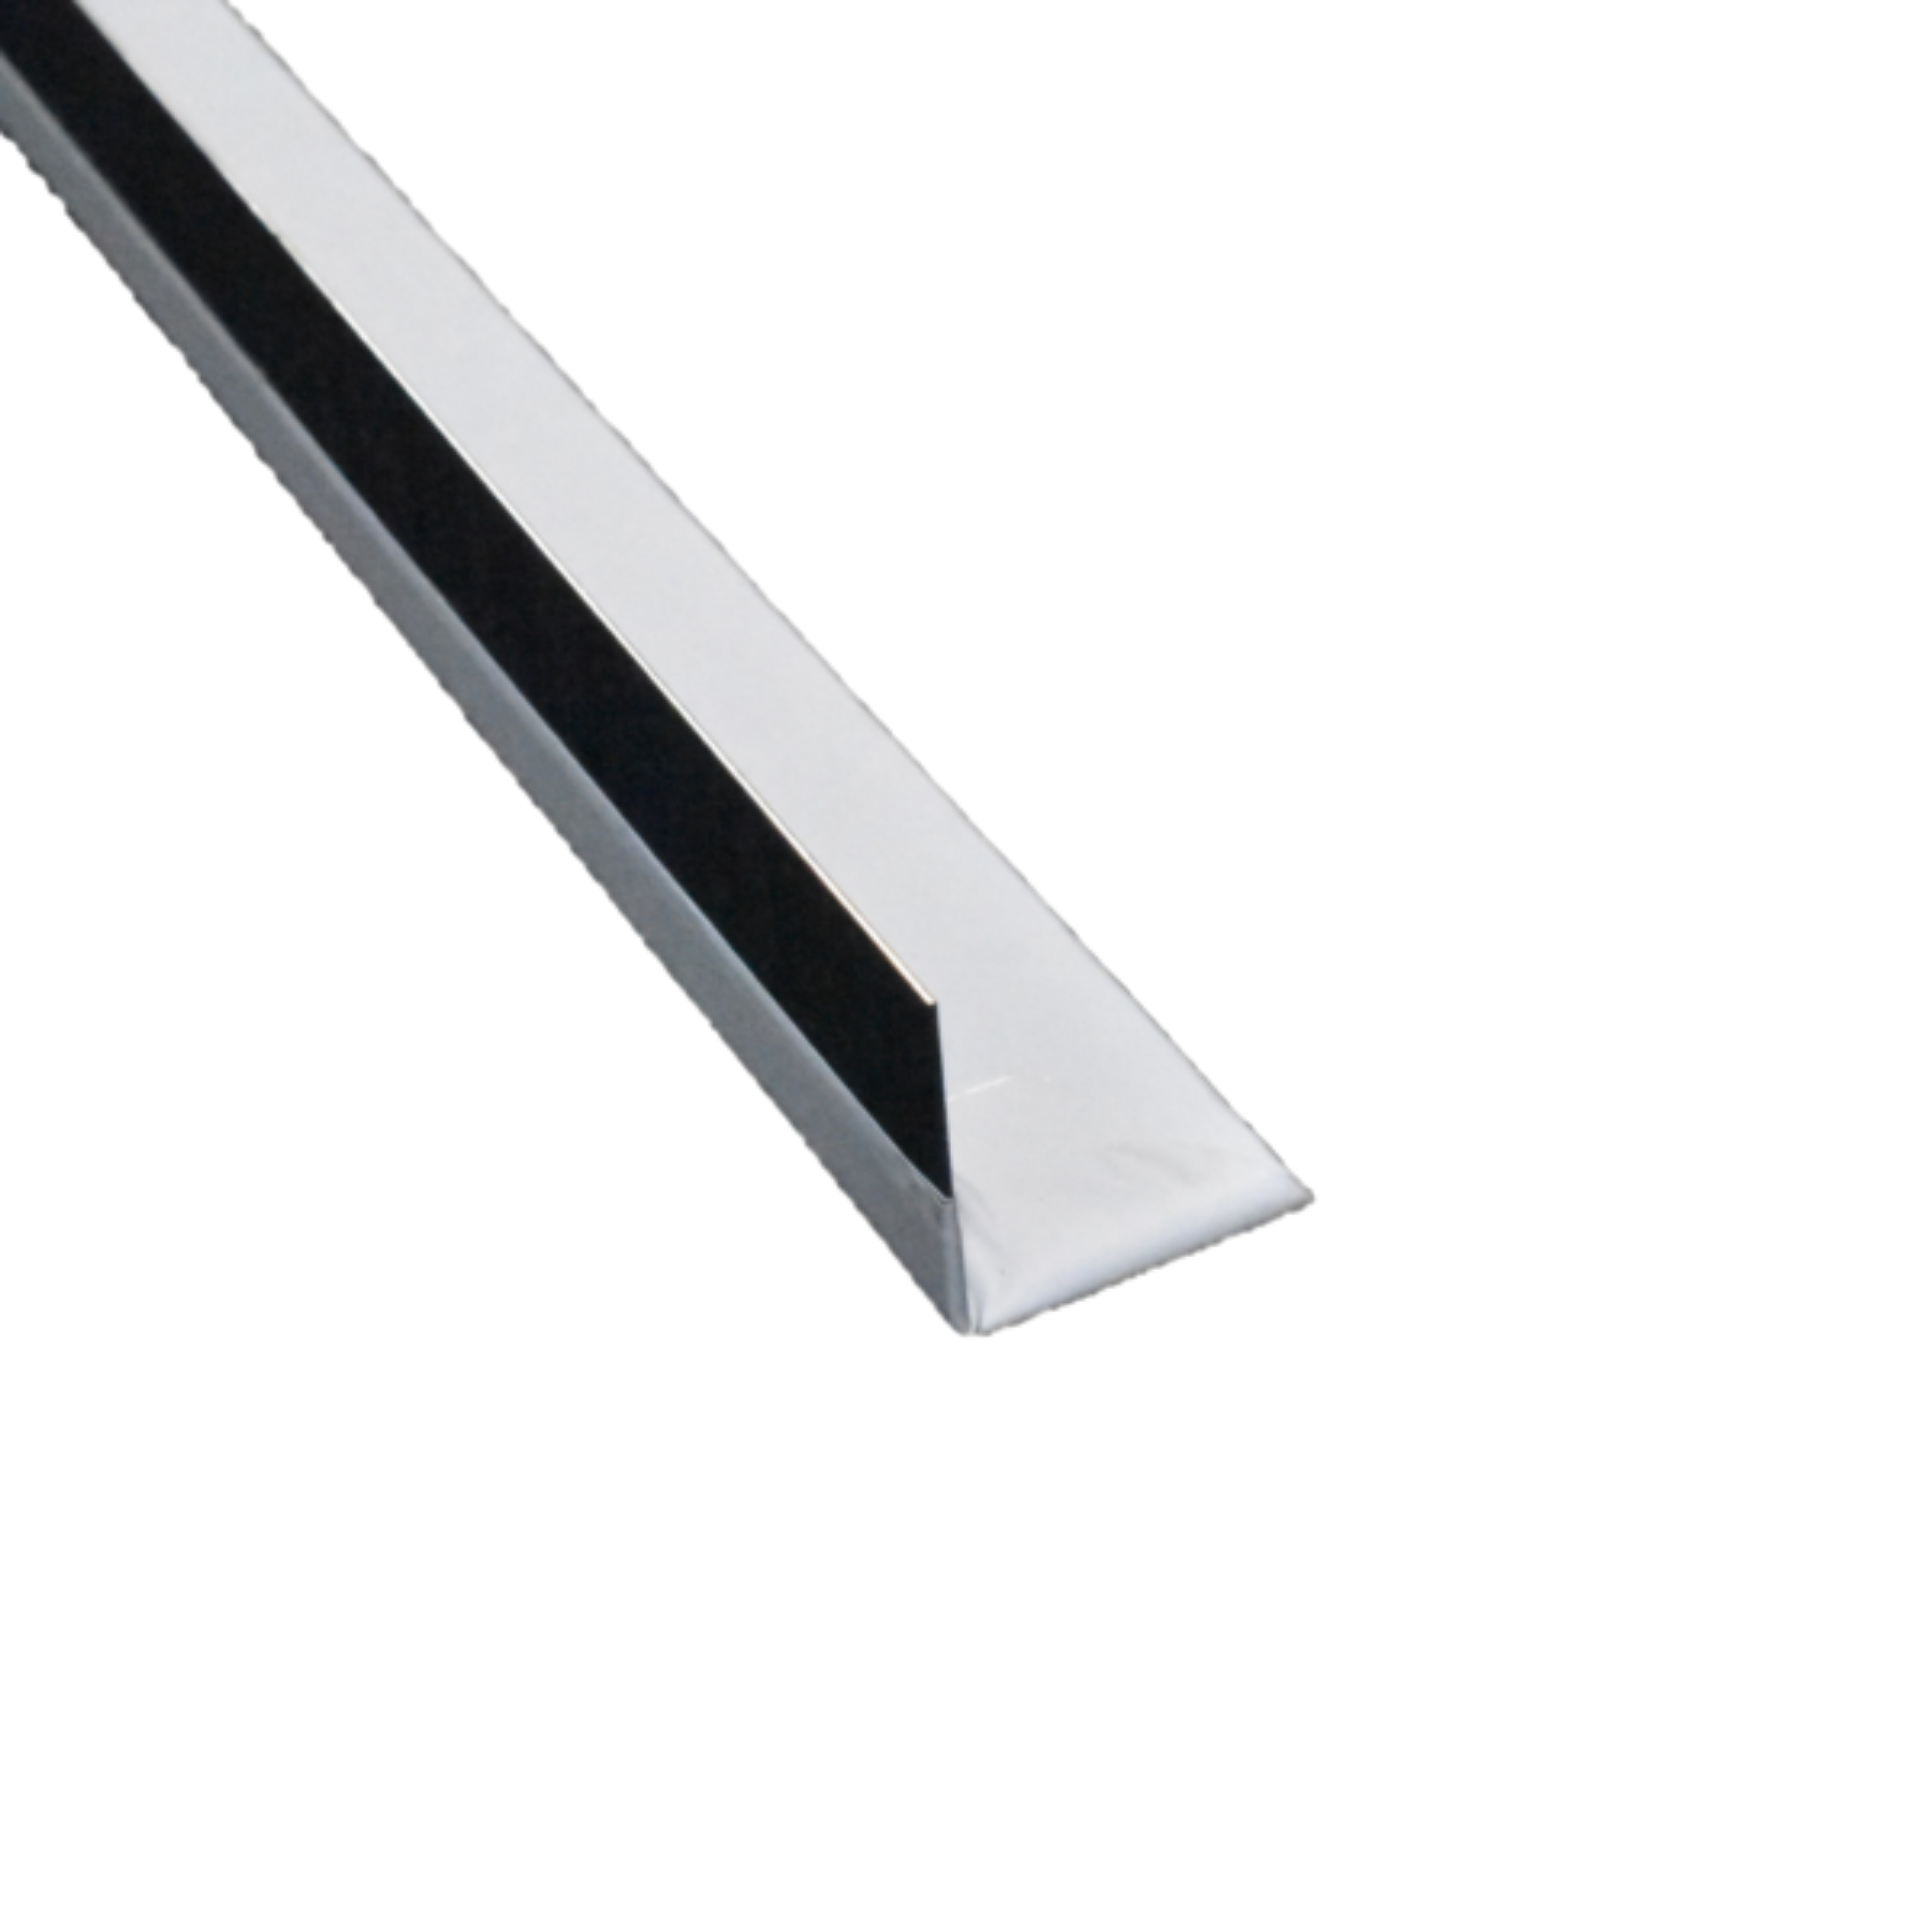 Imagen de Perfil para terminaciones con curvas en placa de yeso ( 2,5 metros )